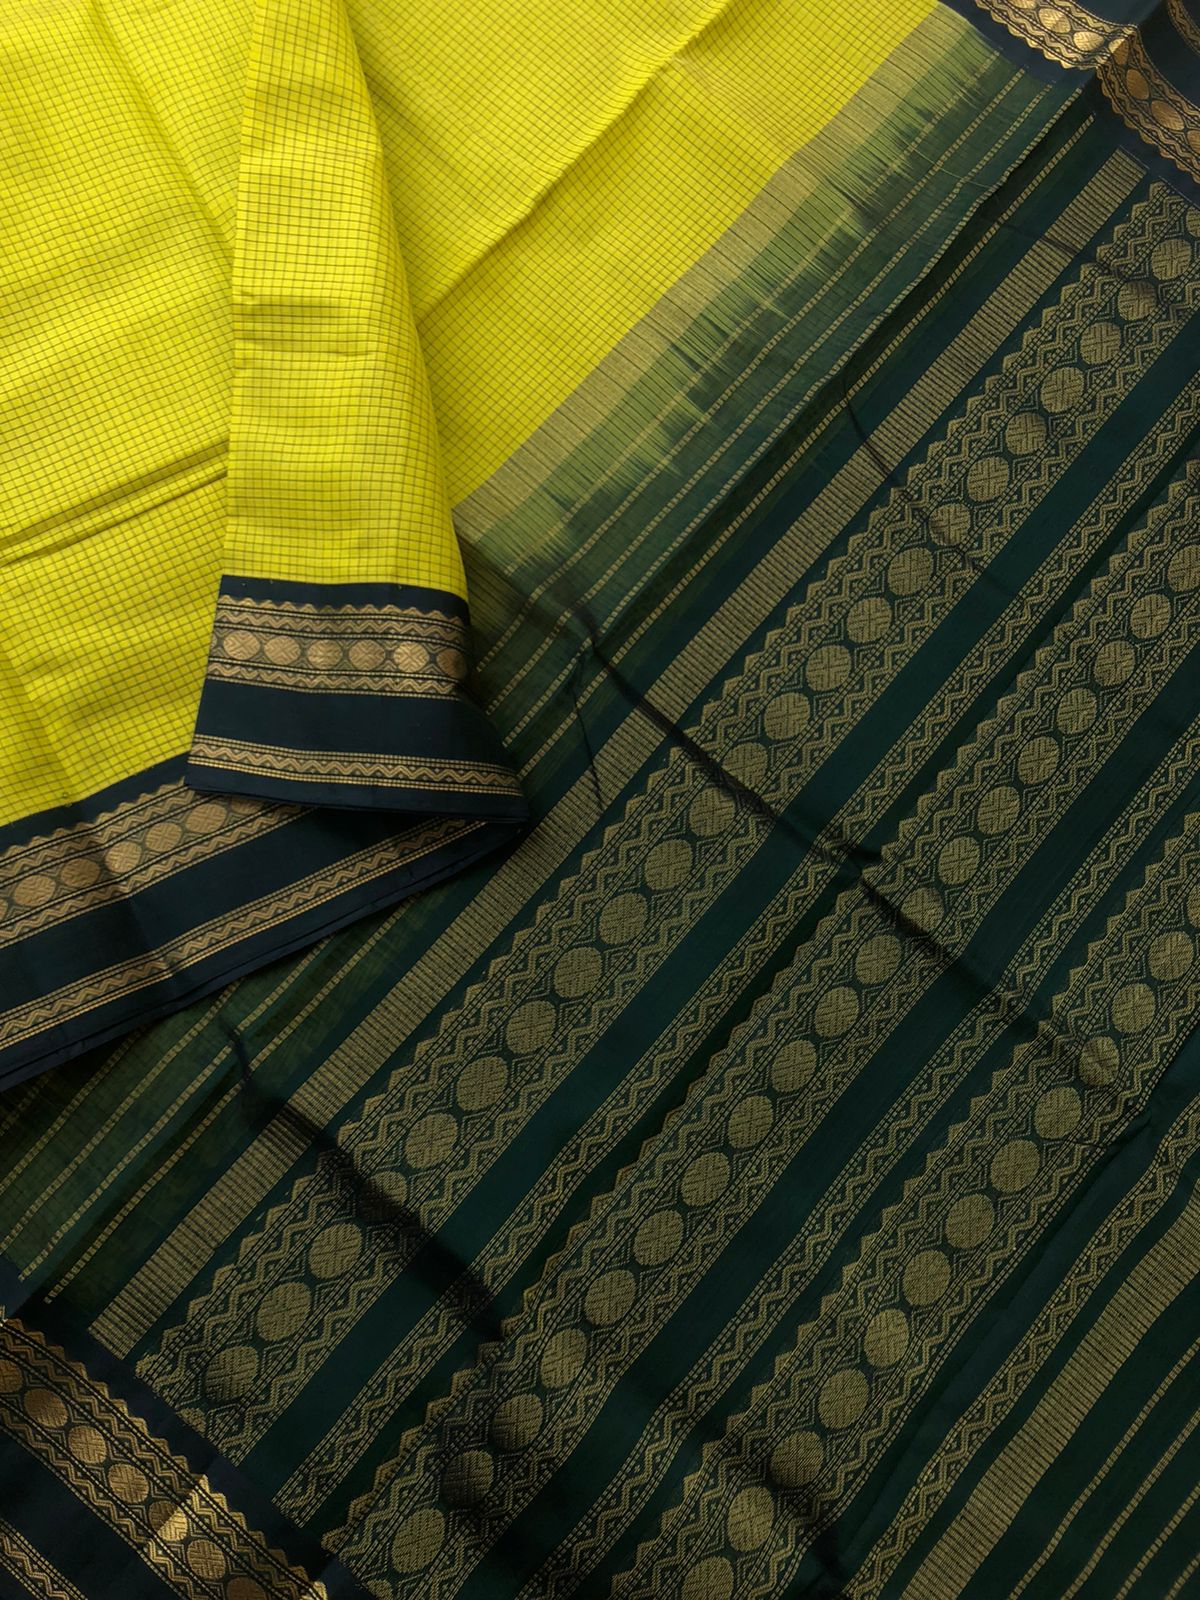 Korvai Silk Cotton - sampanga yellow and deep Meenakshi green podi kattam